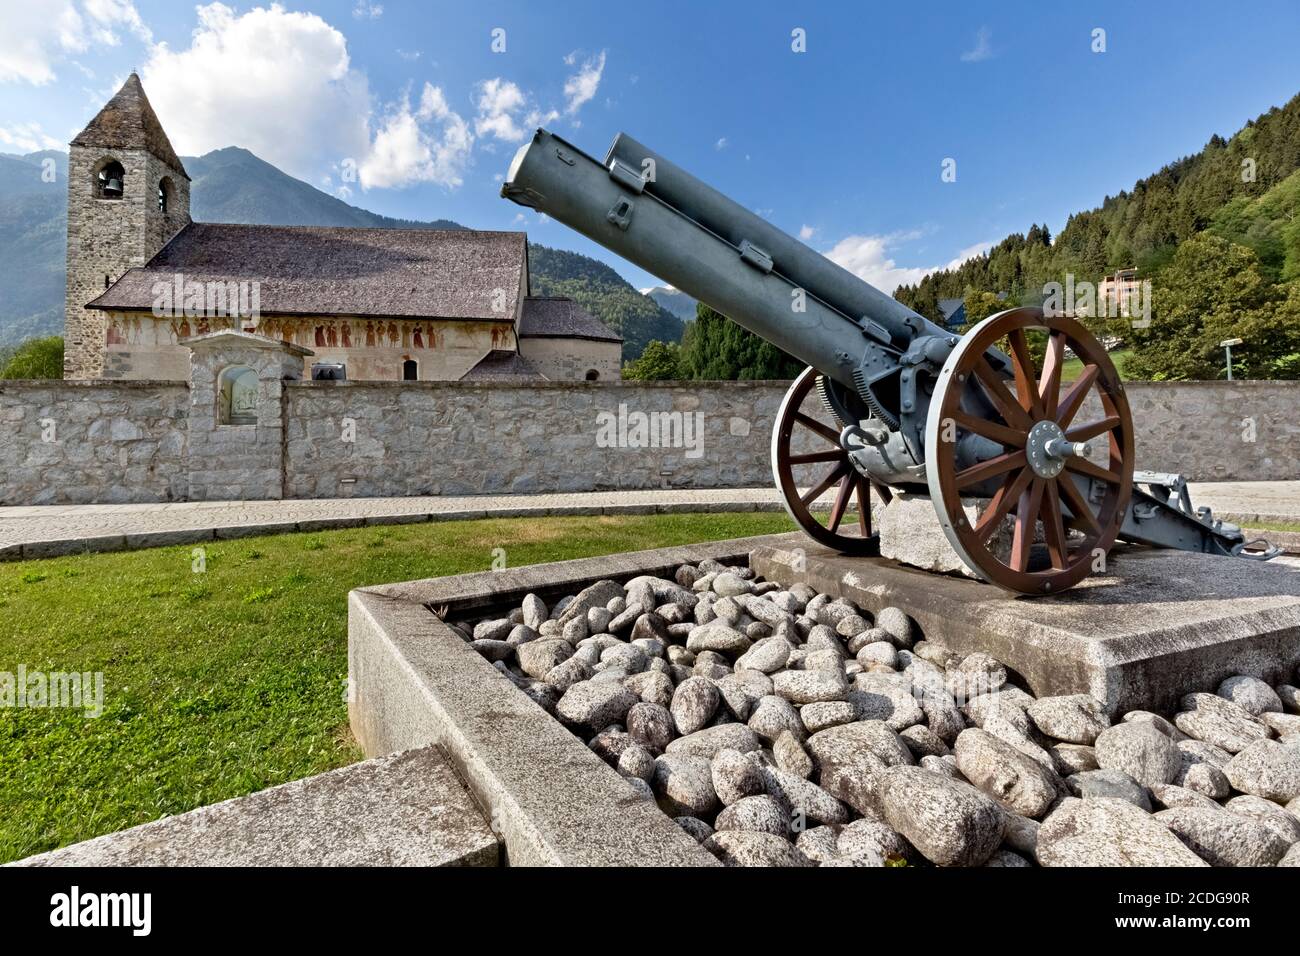 Die Skoda Kanone des Ersten Weltkriegs und die St. Vigil Kirche in Pinzolo. Rendenatal, Provinz Trient, Trentino-Südtirol, Italien, Europa. Stockfoto